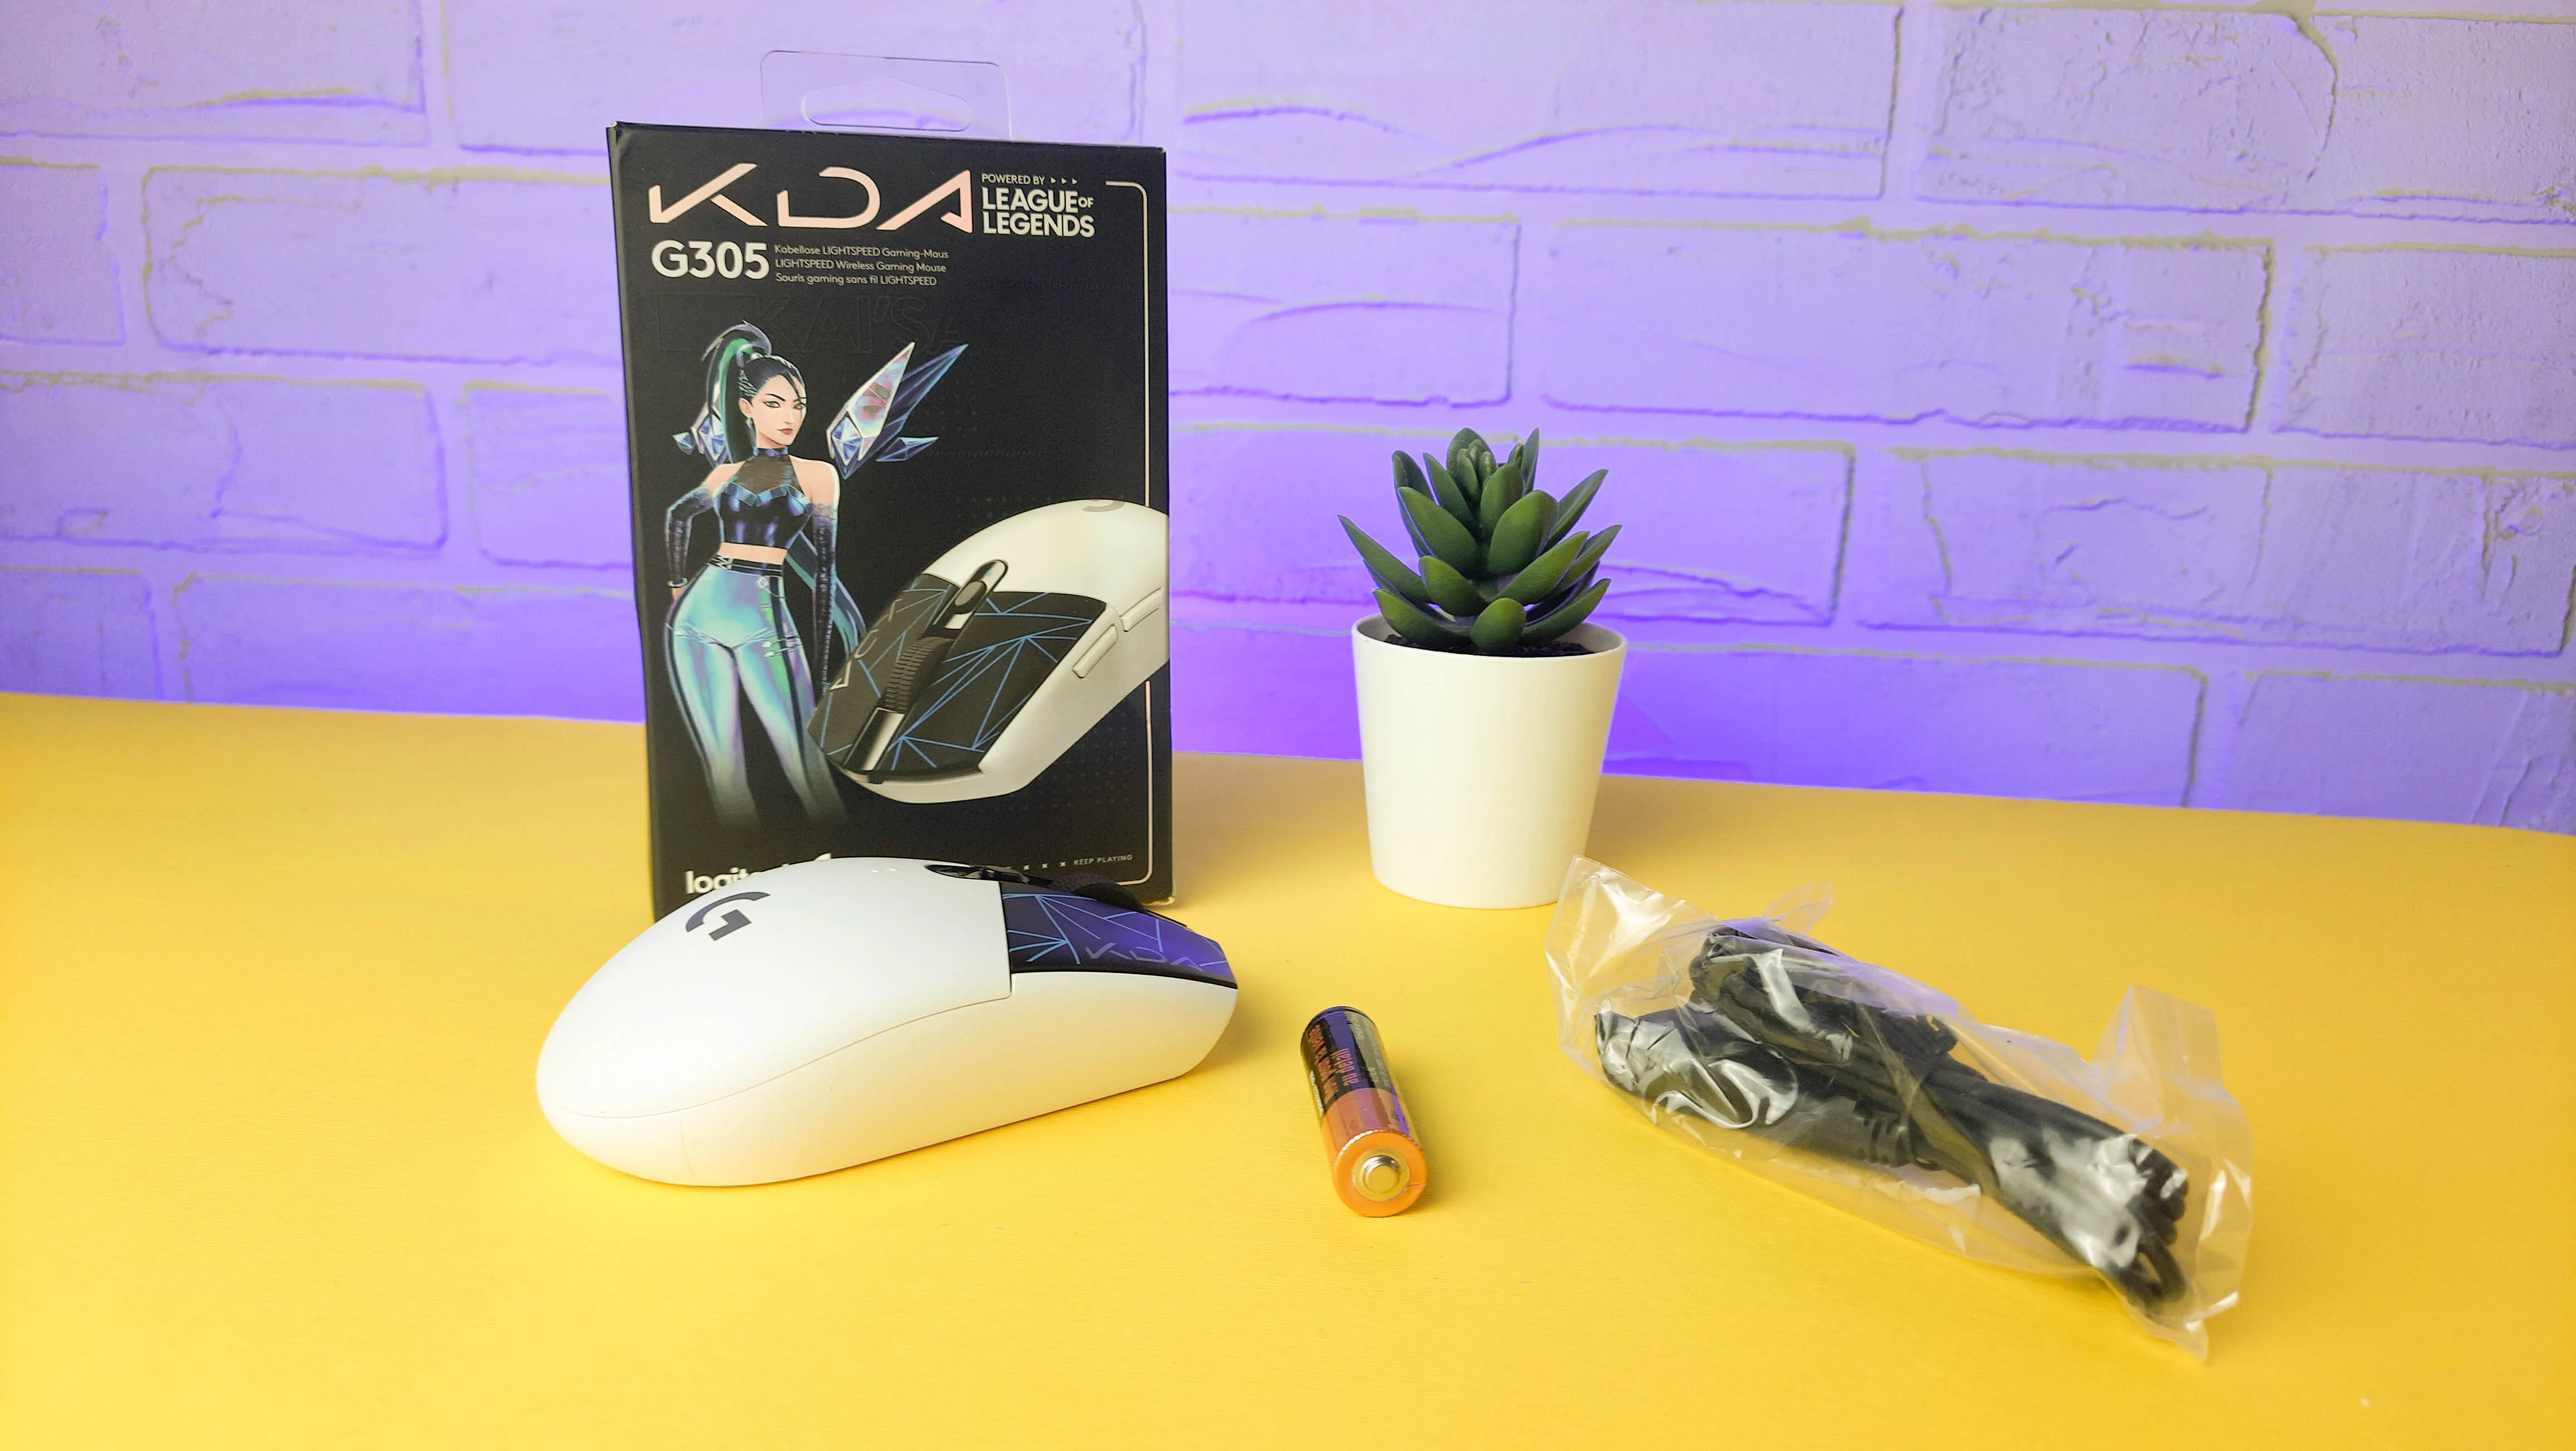 Обзор Logitech G305 K/DA: беспроводная игровая мышка для фанатов K-Pop и League of Legends - фото 1